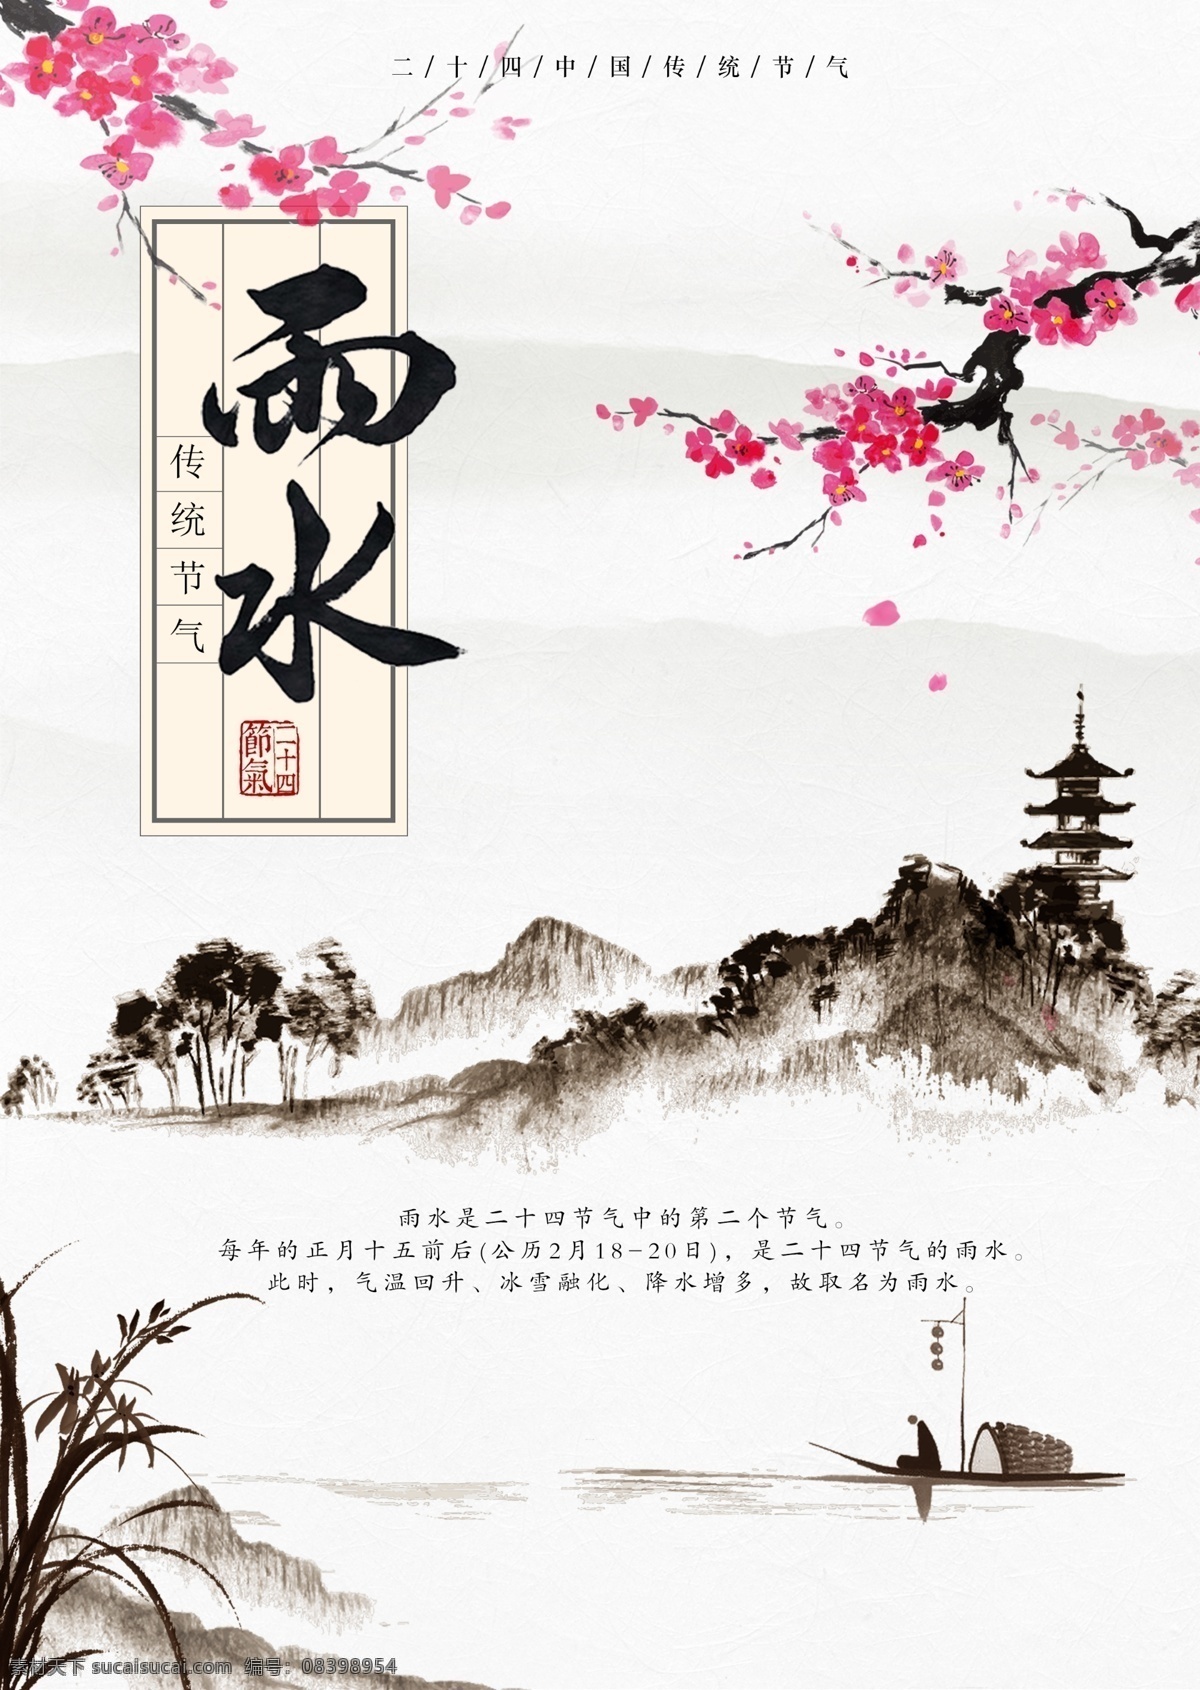 二 十 四 中国 传统 节气 雨水 海报 中国风 企业文化 高清图片素材 设计素材 模板设计 高清 设计图